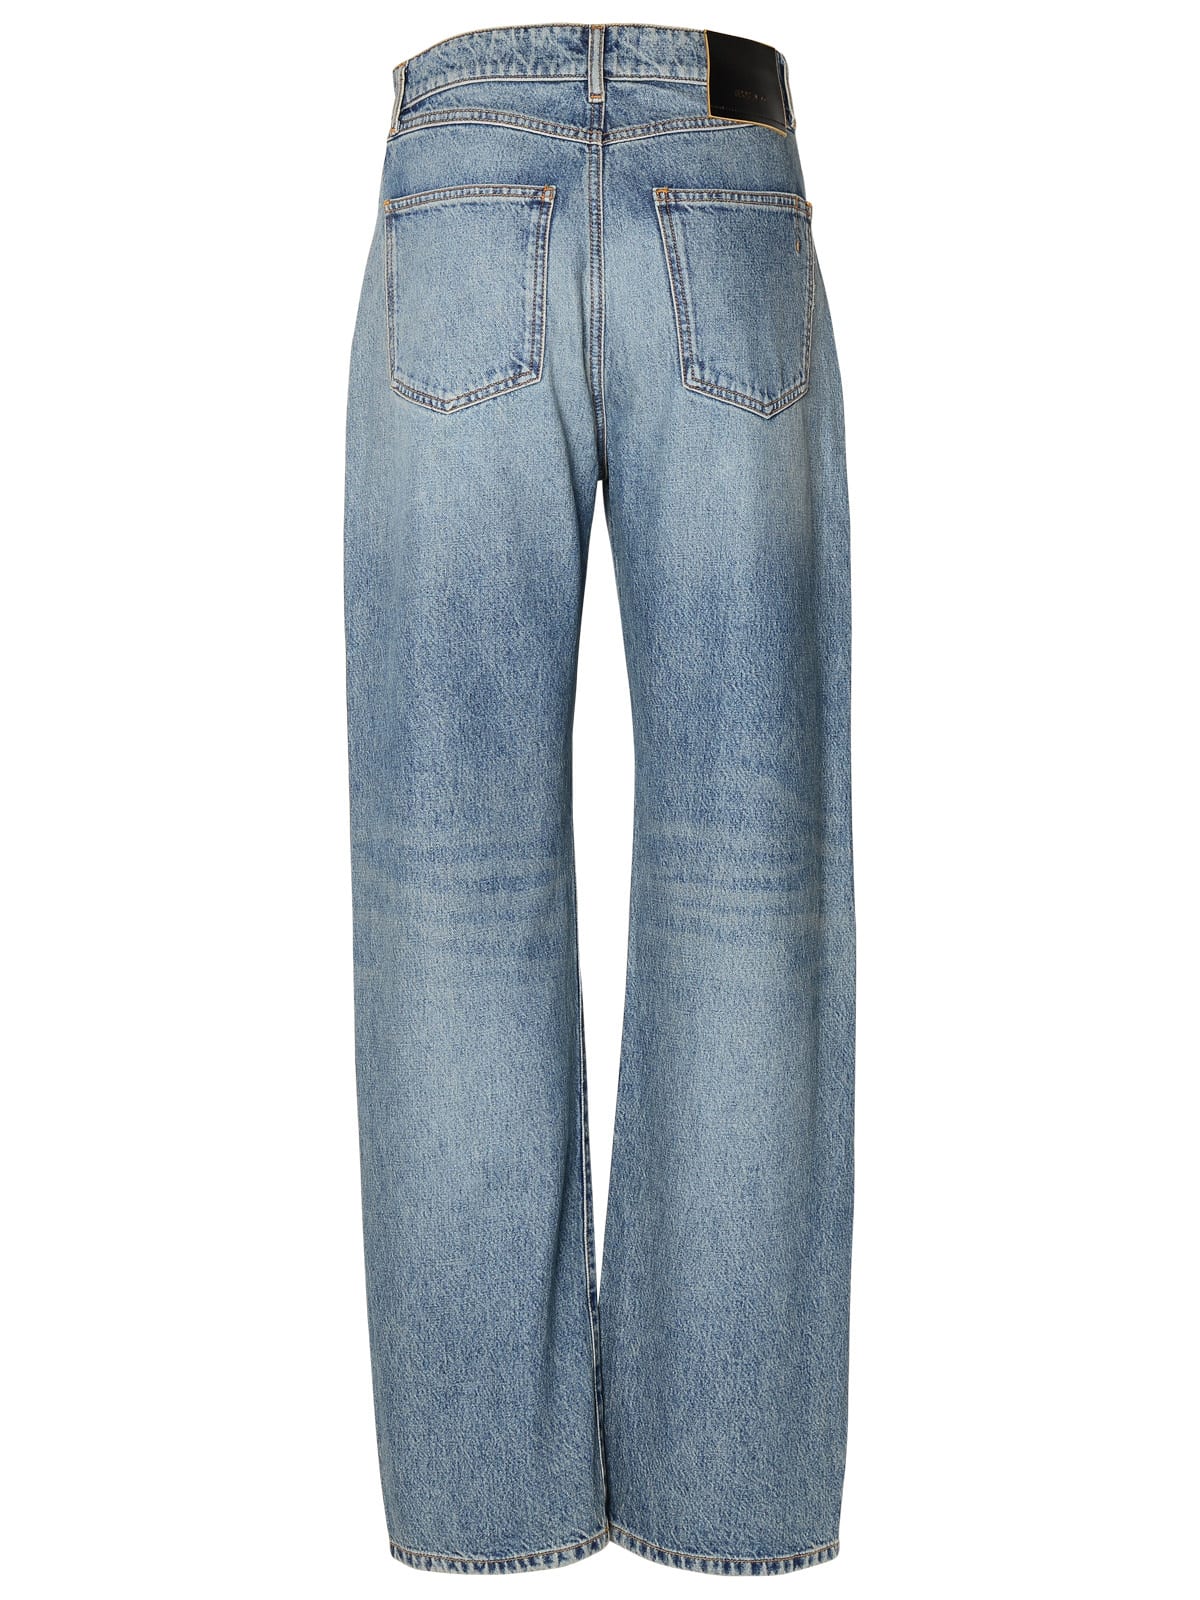 Shop Sportmax Blue Cotton Jeans